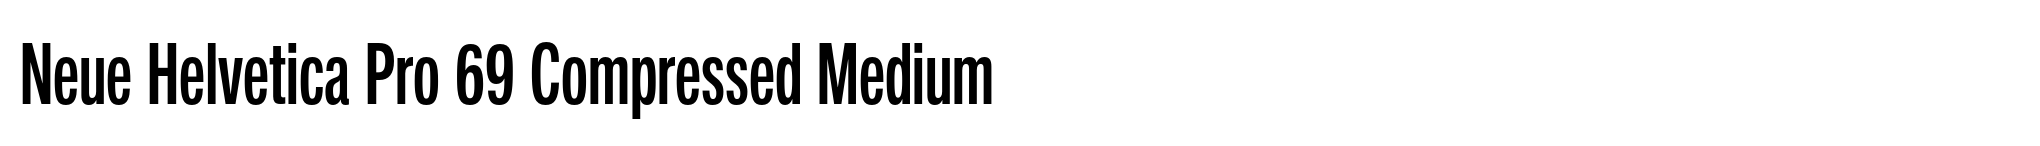 Neue Helvetica Pro 69 Compressed Medium image